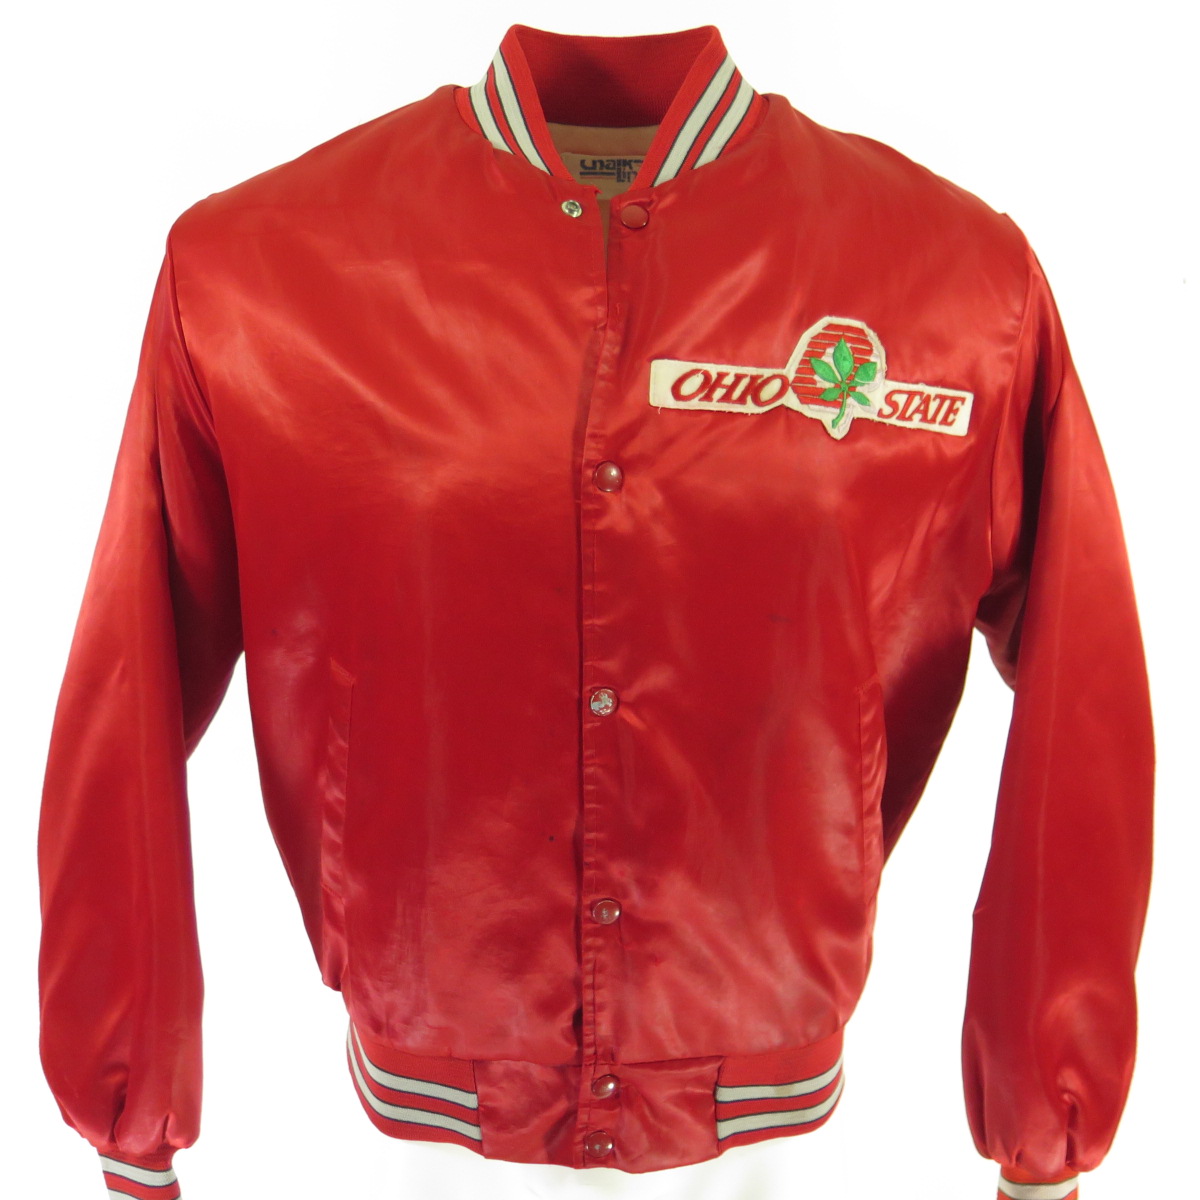 Vintage Ohio State Buckeyes Leather Varsity Jacket - Maker of Jacket